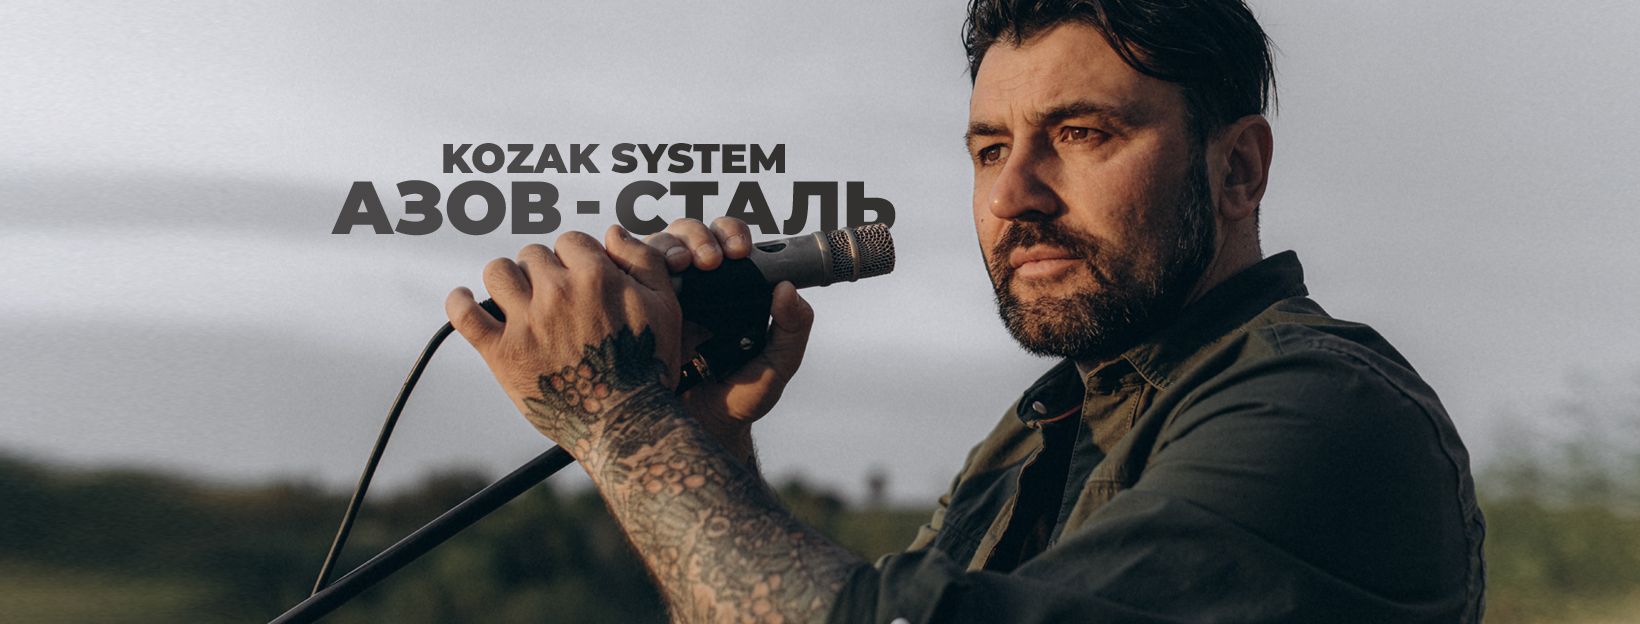 Гурт KOZAK SYSTEM презентував кліп «Азов - сталь» на честь оборонців Маріуполя, відео